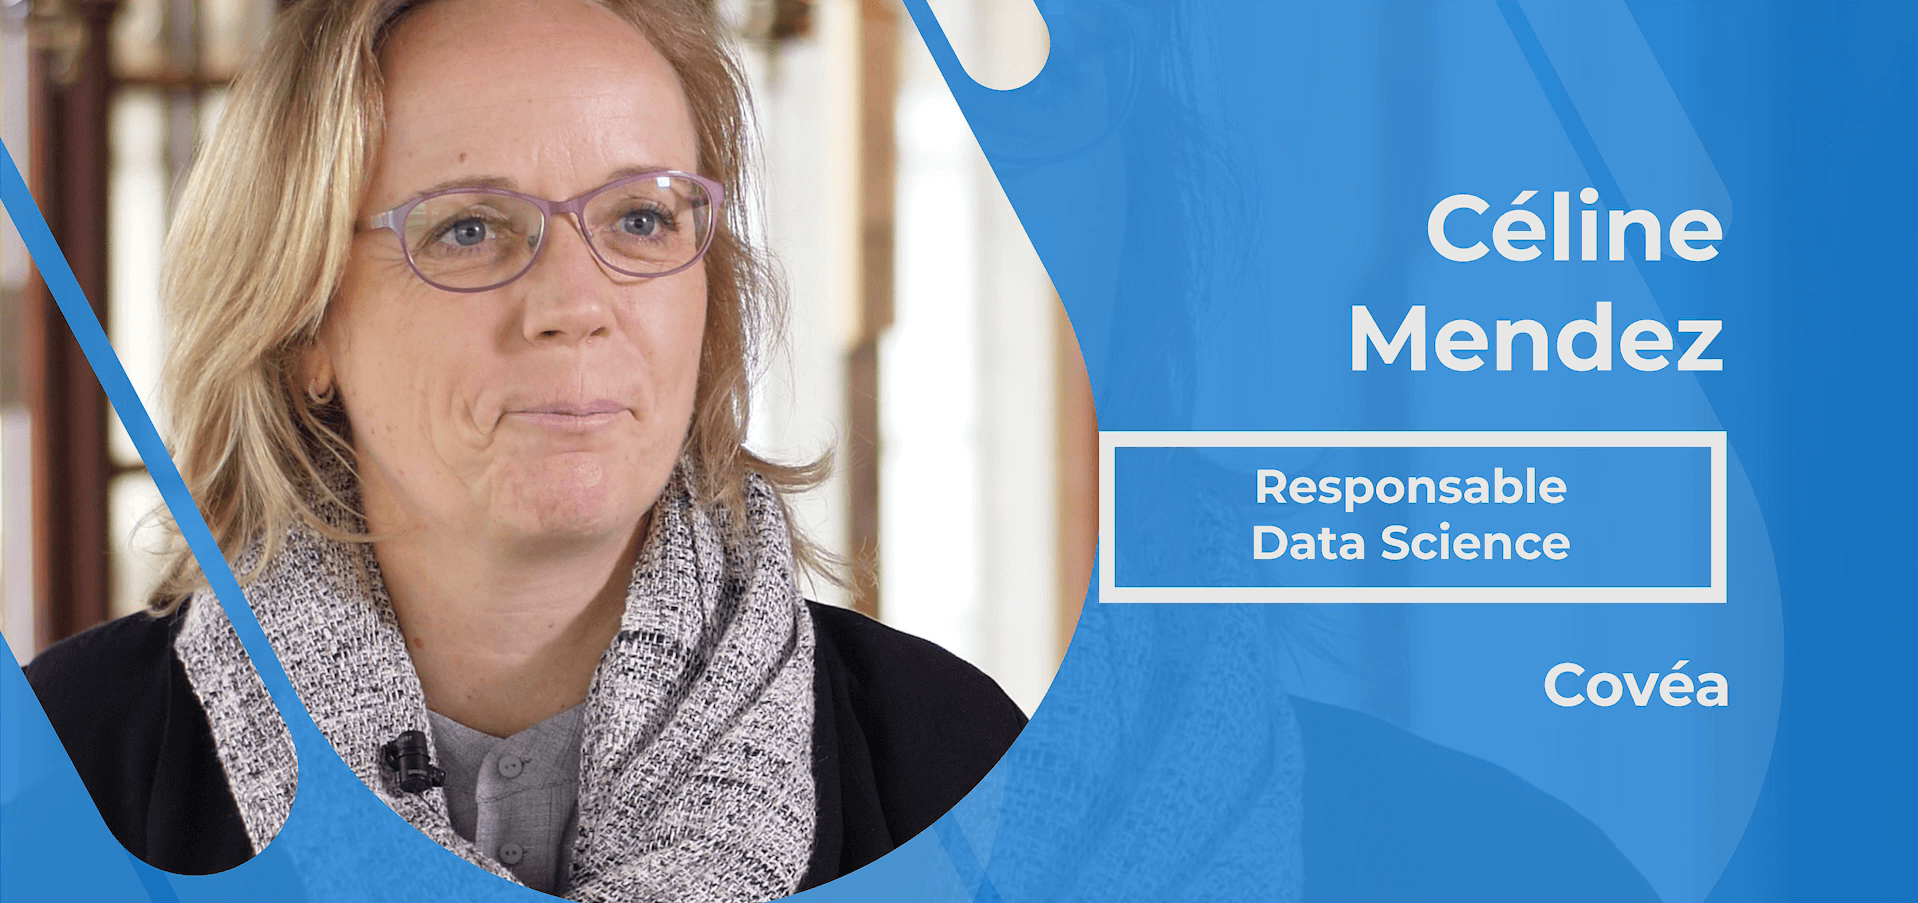 Actualités : Interview Céline Mendez - Responsable Data Science chez Covéa